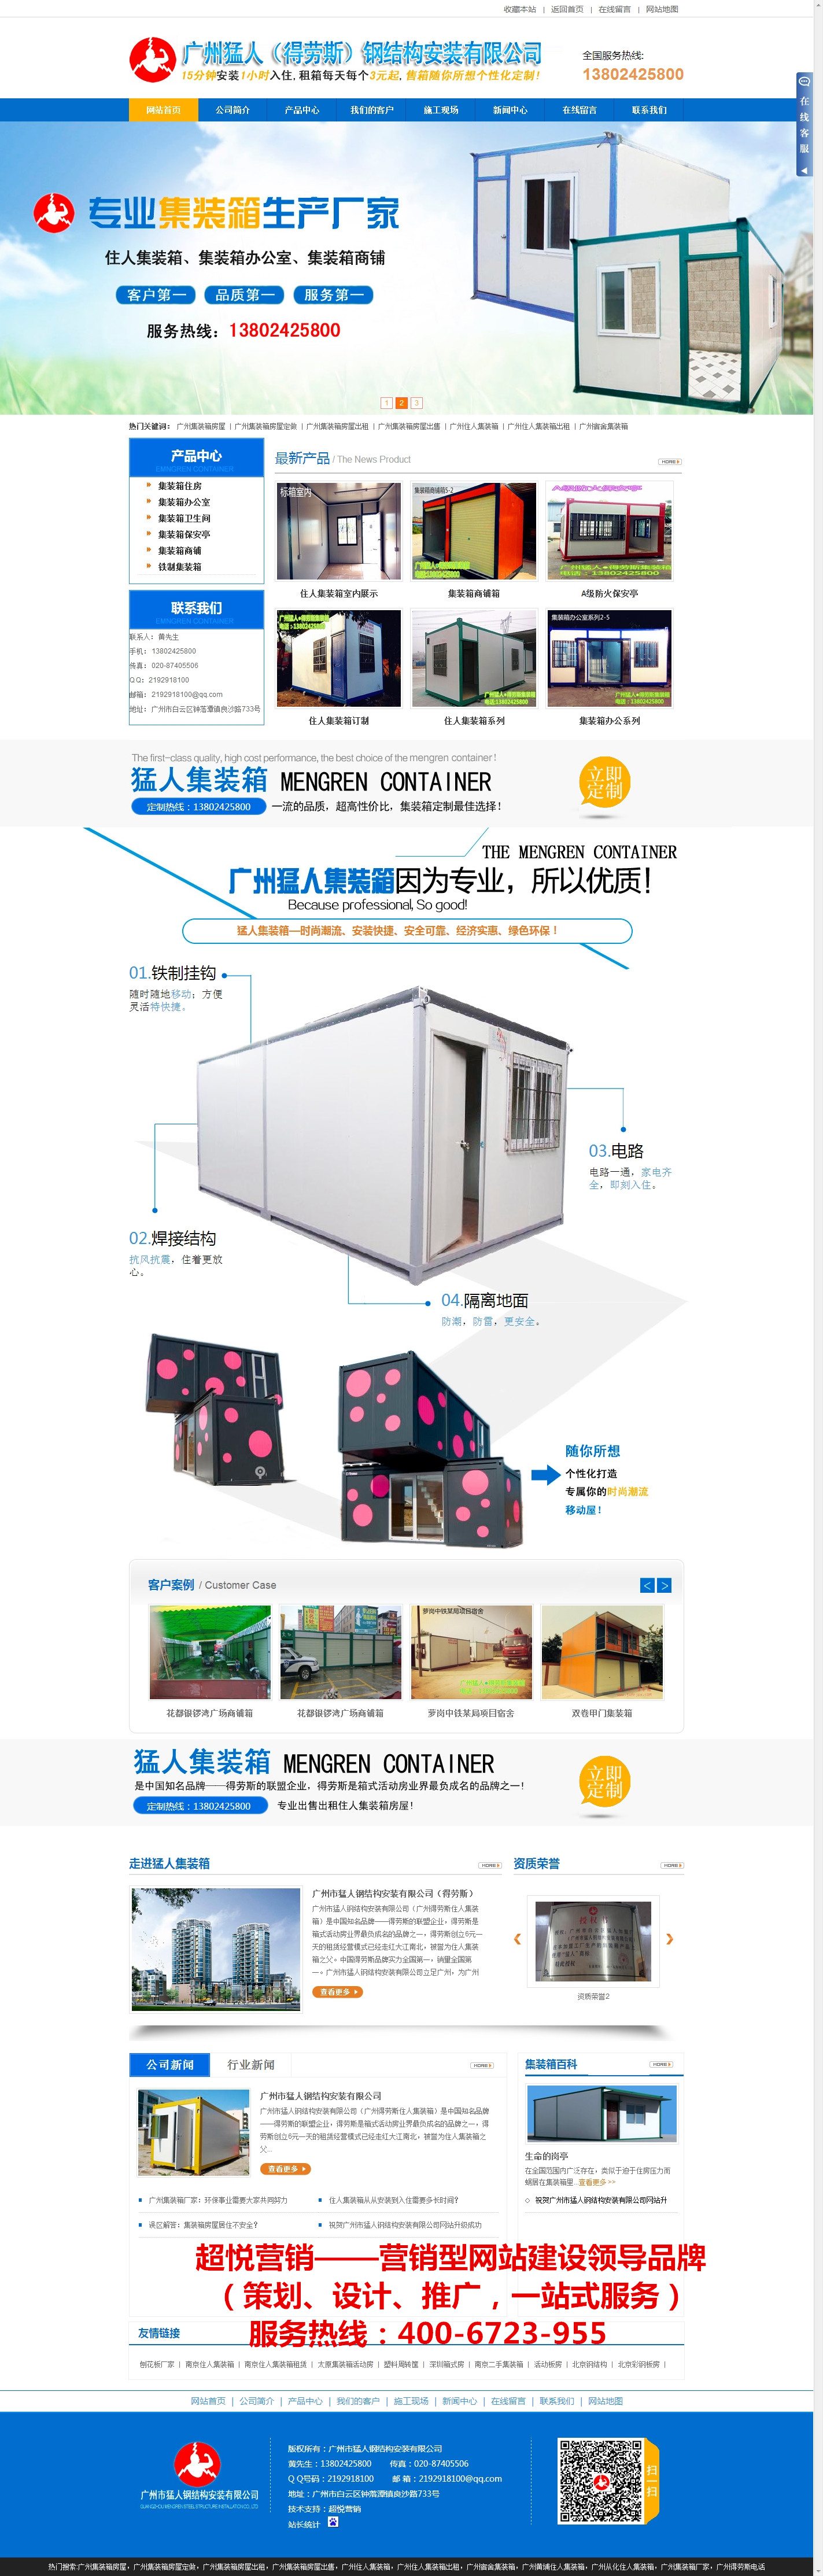 广州猛人钢结构――集装箱房屋